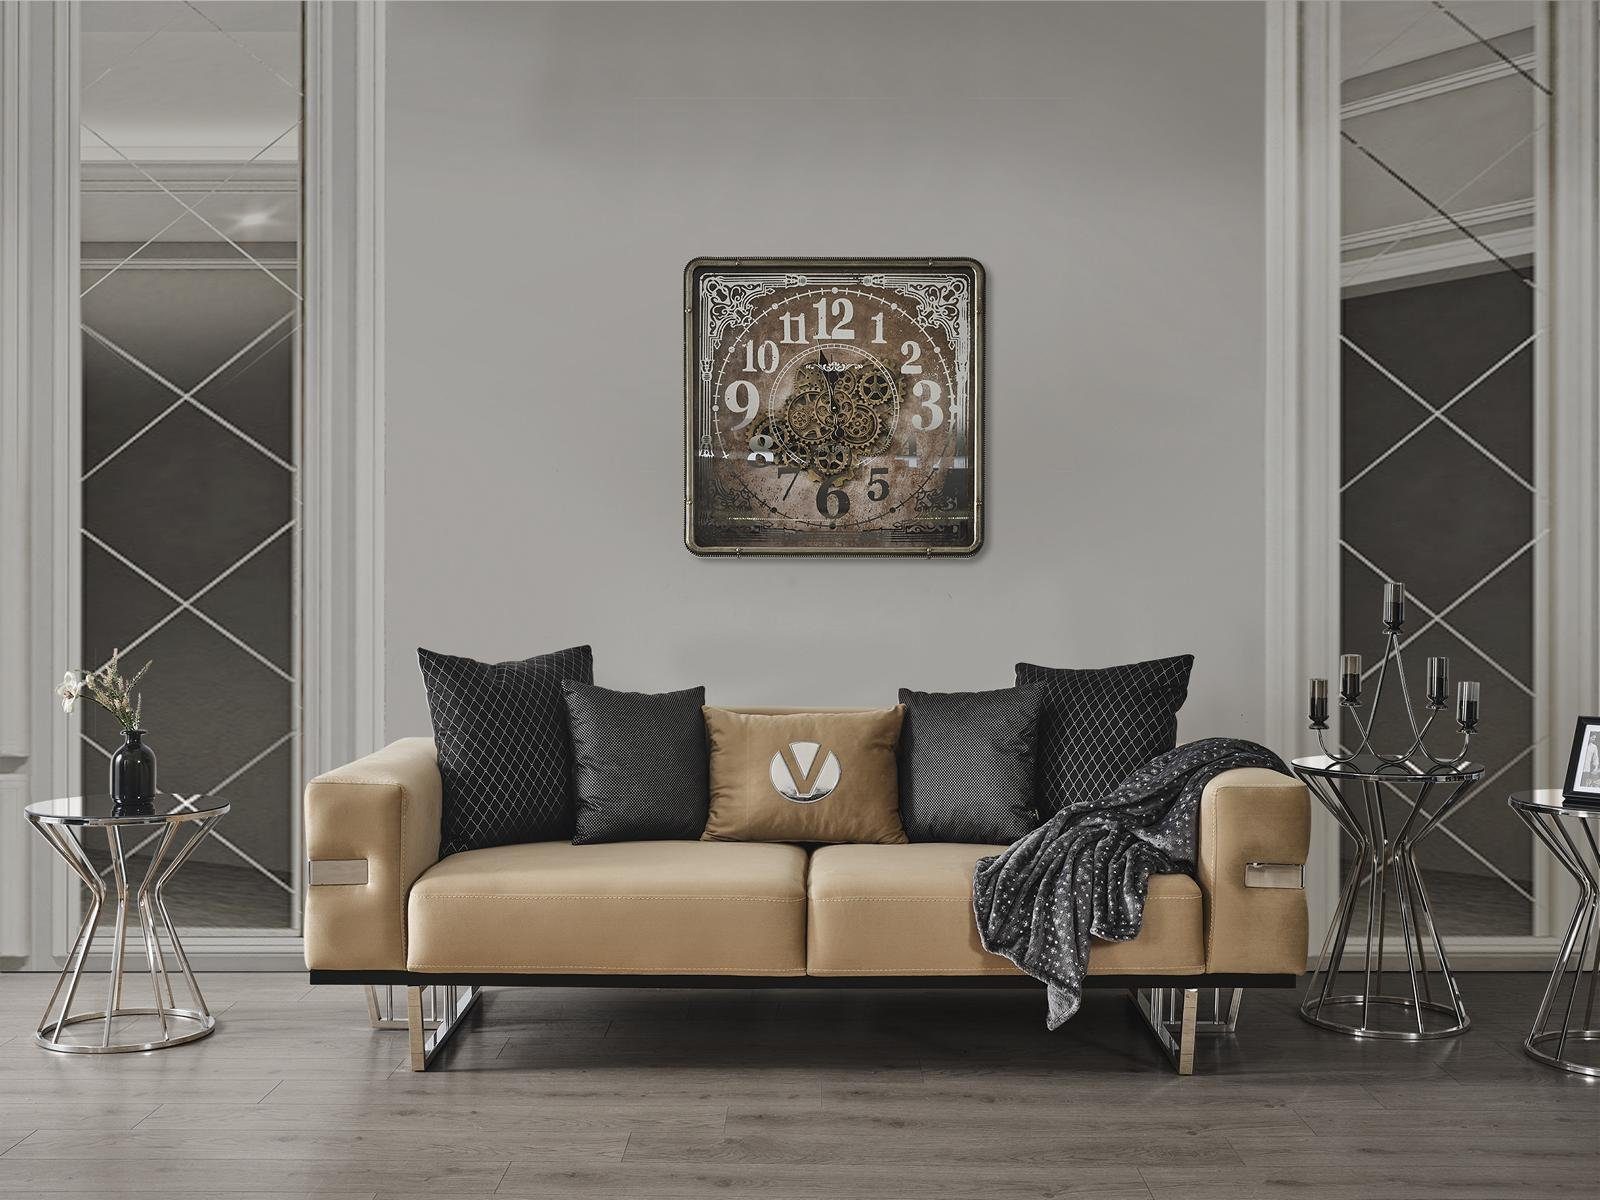 JVmoebel Sofa Luxus Couch mit Edelstahl Füßen Sitz Polster Designer Couchen, Made in Europa